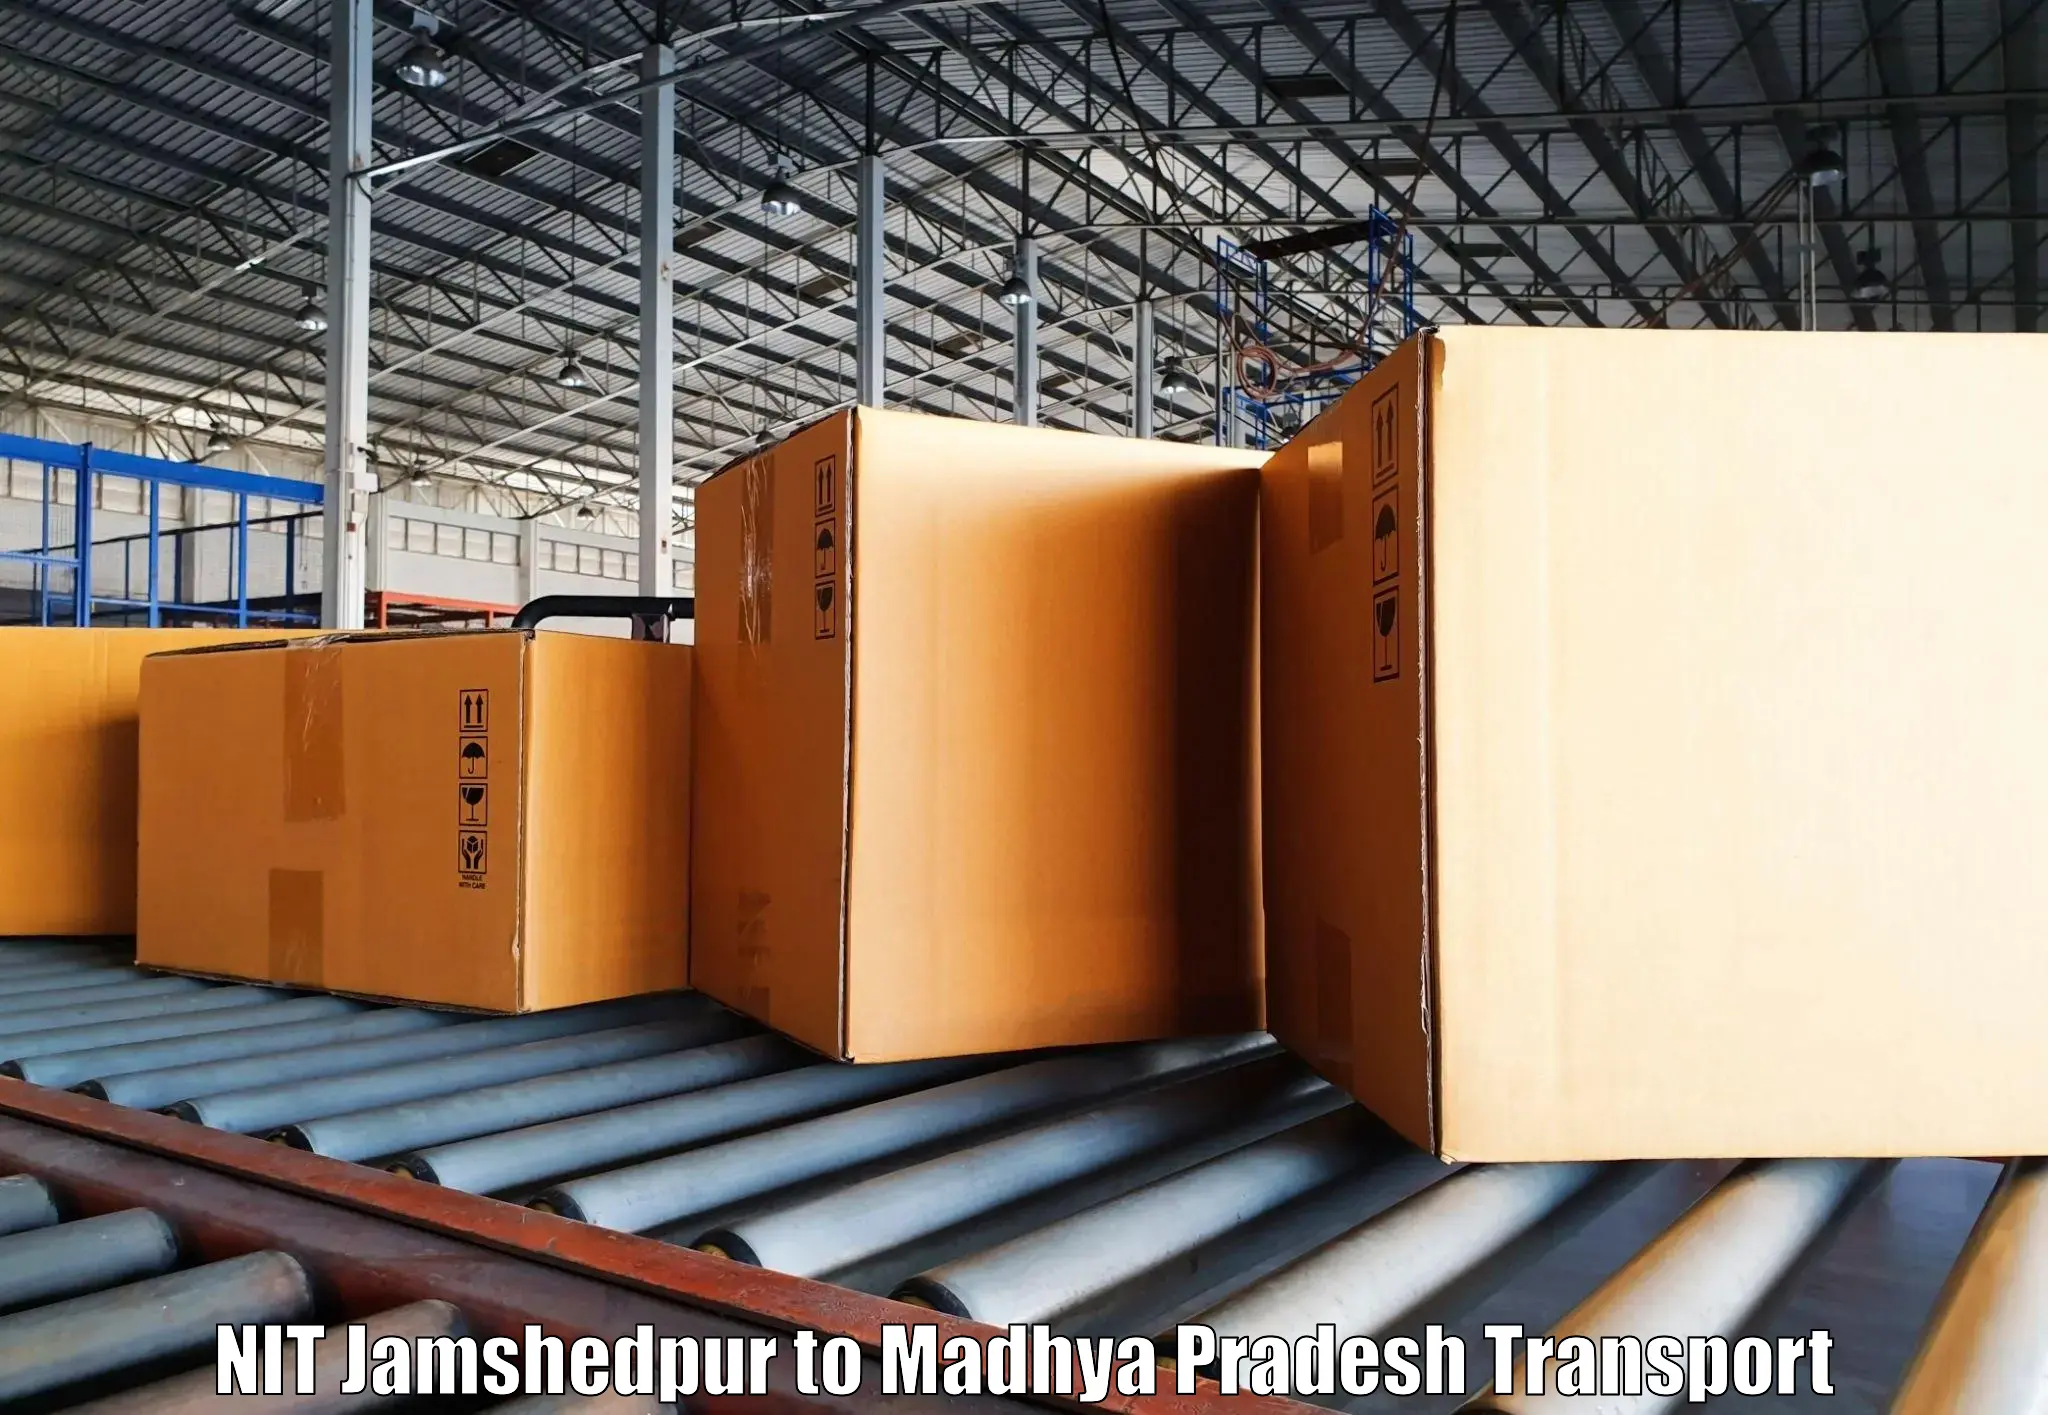 Furniture transport service NIT Jamshedpur to Madhya Pradesh